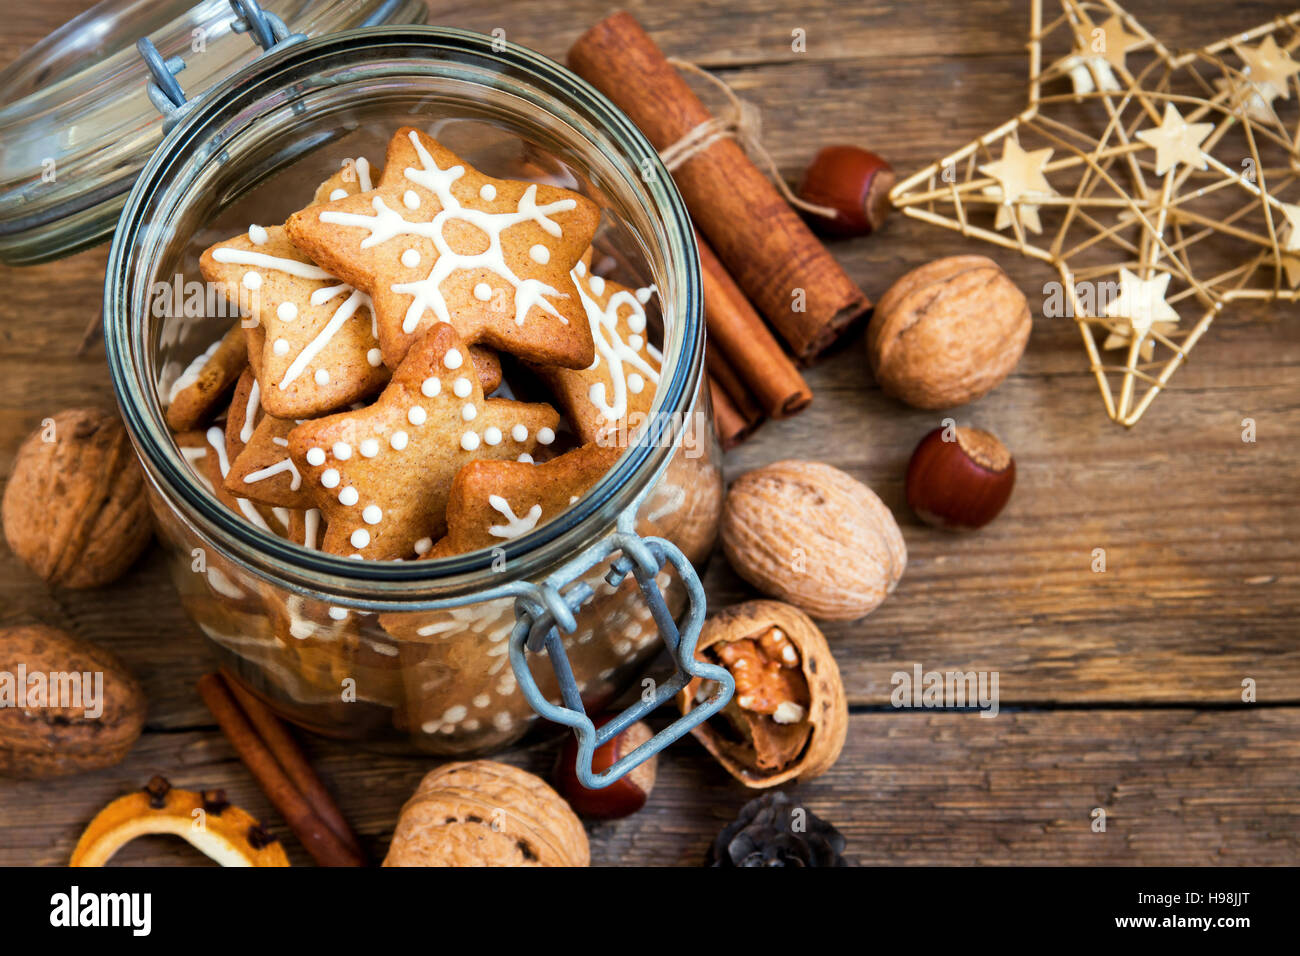 Pan de jengibre galletas de Navidad estrellas en el tarro de vidrio con especias y decoración de Navidad cerrar Foto de stock